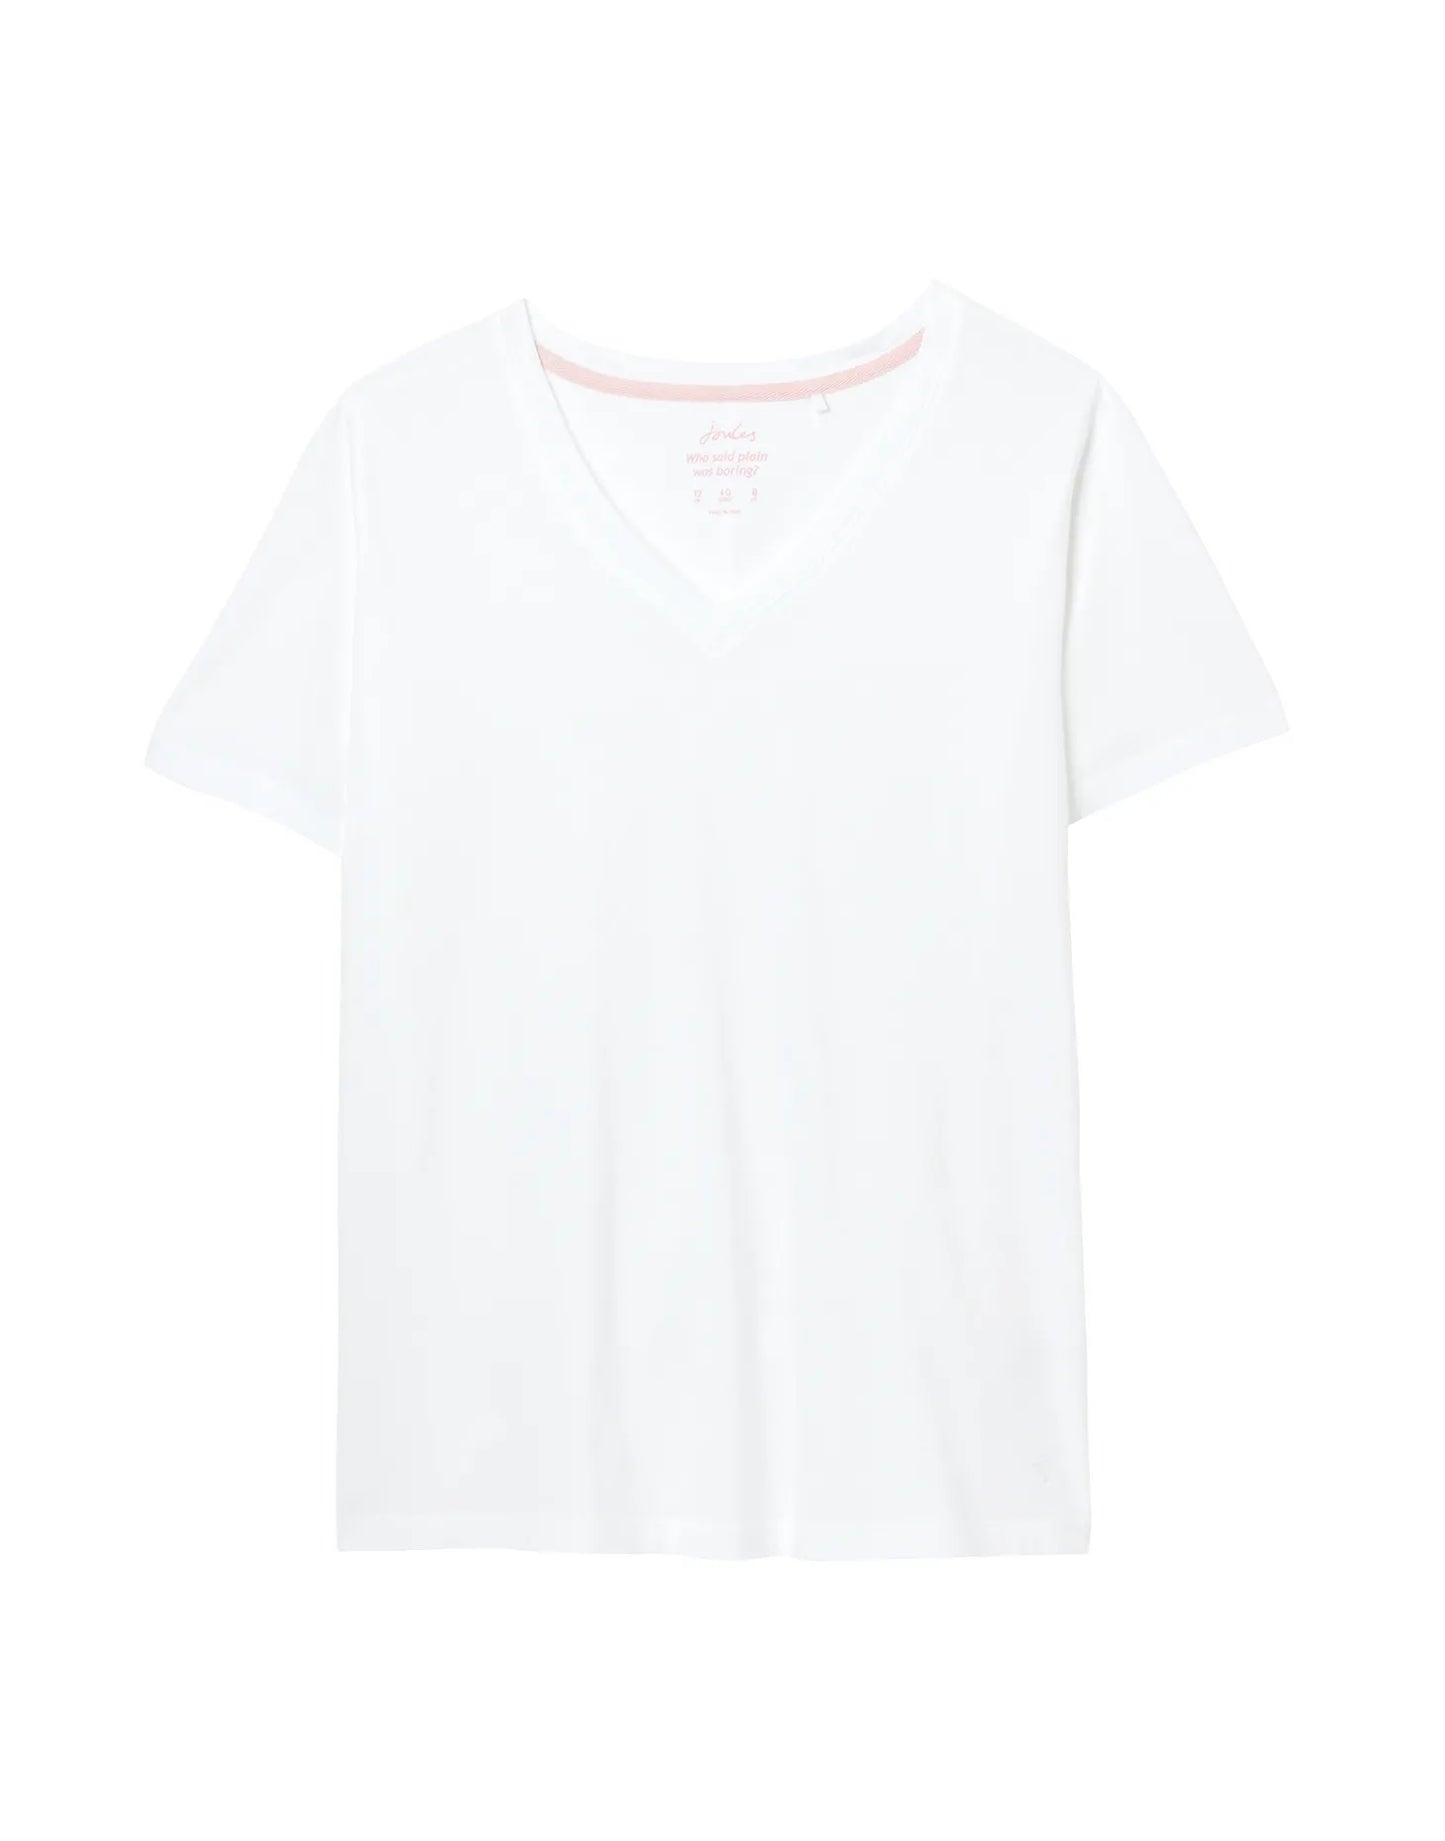 Emily T-Shirt - Cream